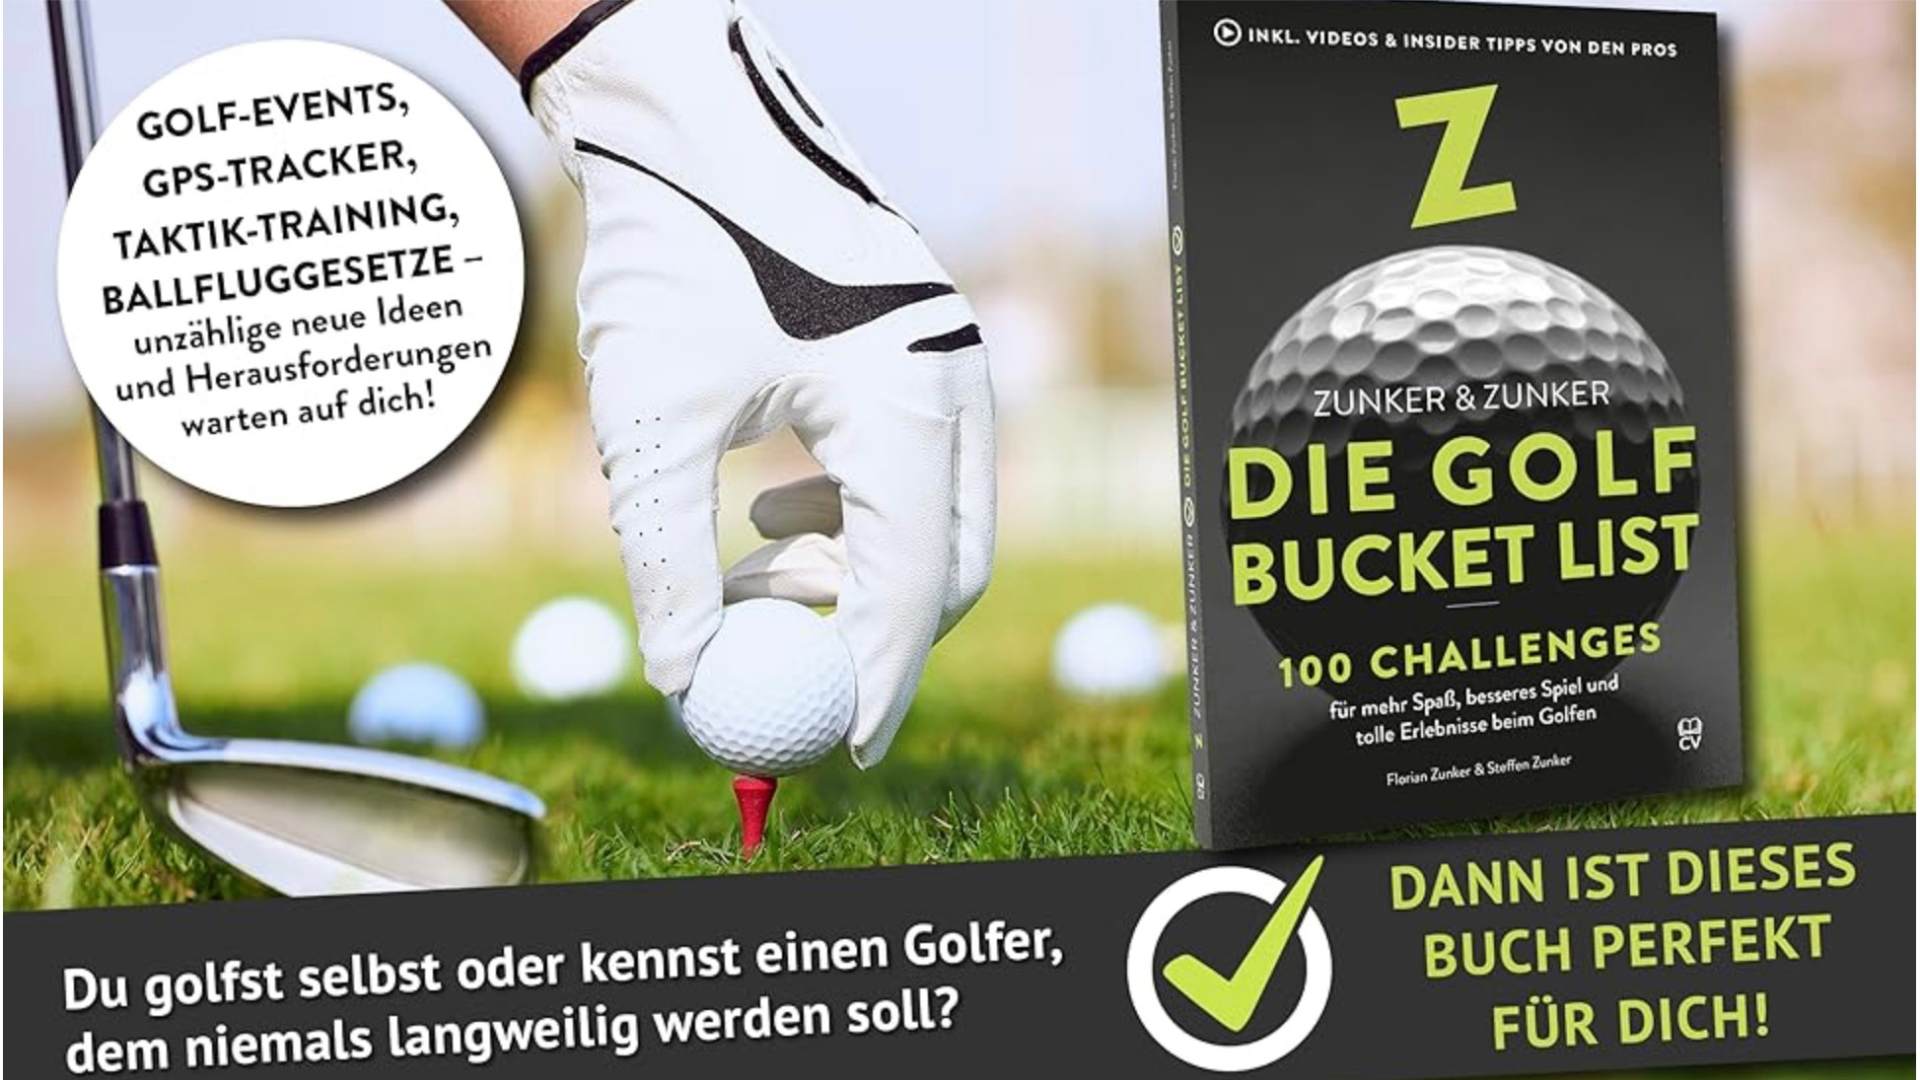 Zunker und Zunker Die Golf Bucket List auf Golfliebe.com